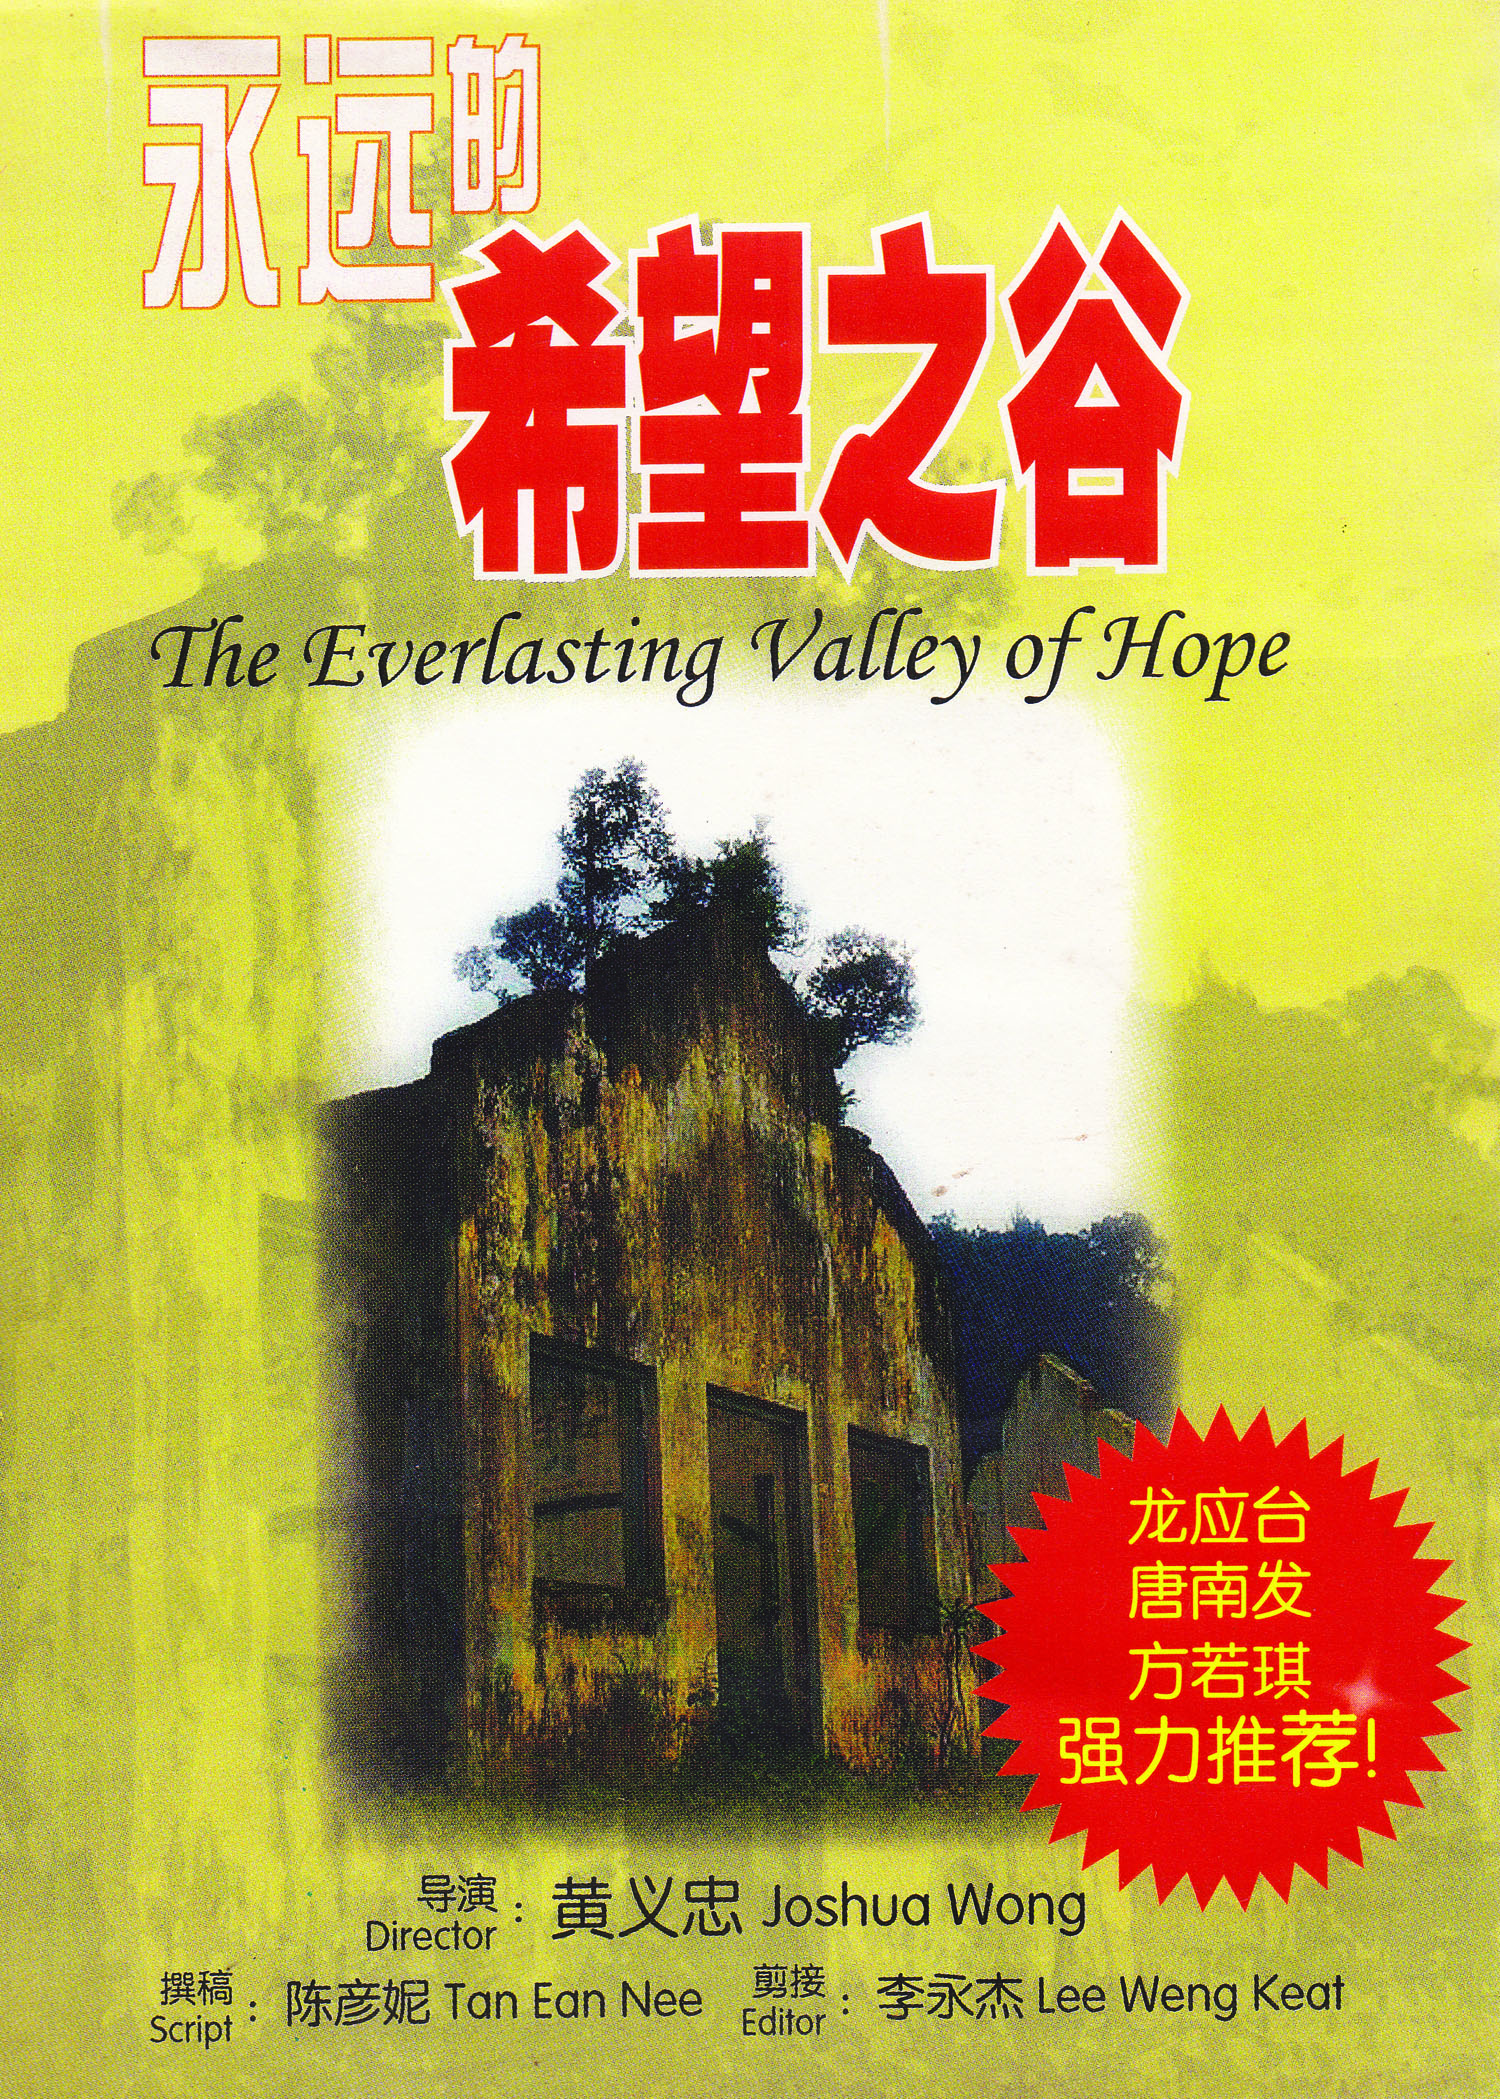   由黄义忠和陈彦妮制作的《永远的希望之谷》中文纪录片于  2009  年推出。（陈彦妮 摄）  